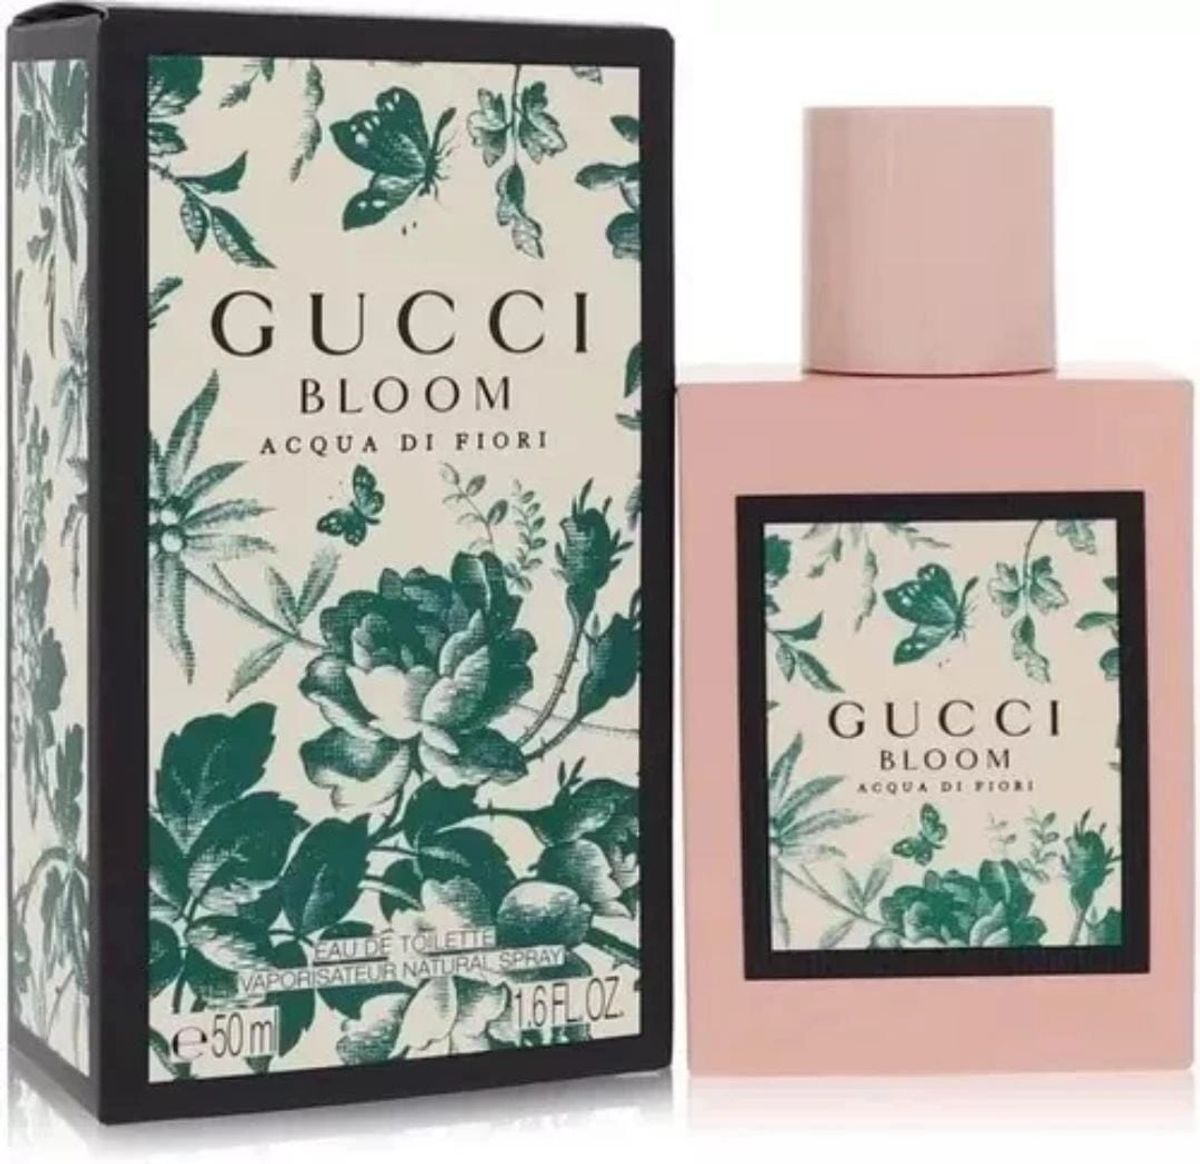 Gucci Bloom 100ml Dama Acqua Di Fiori